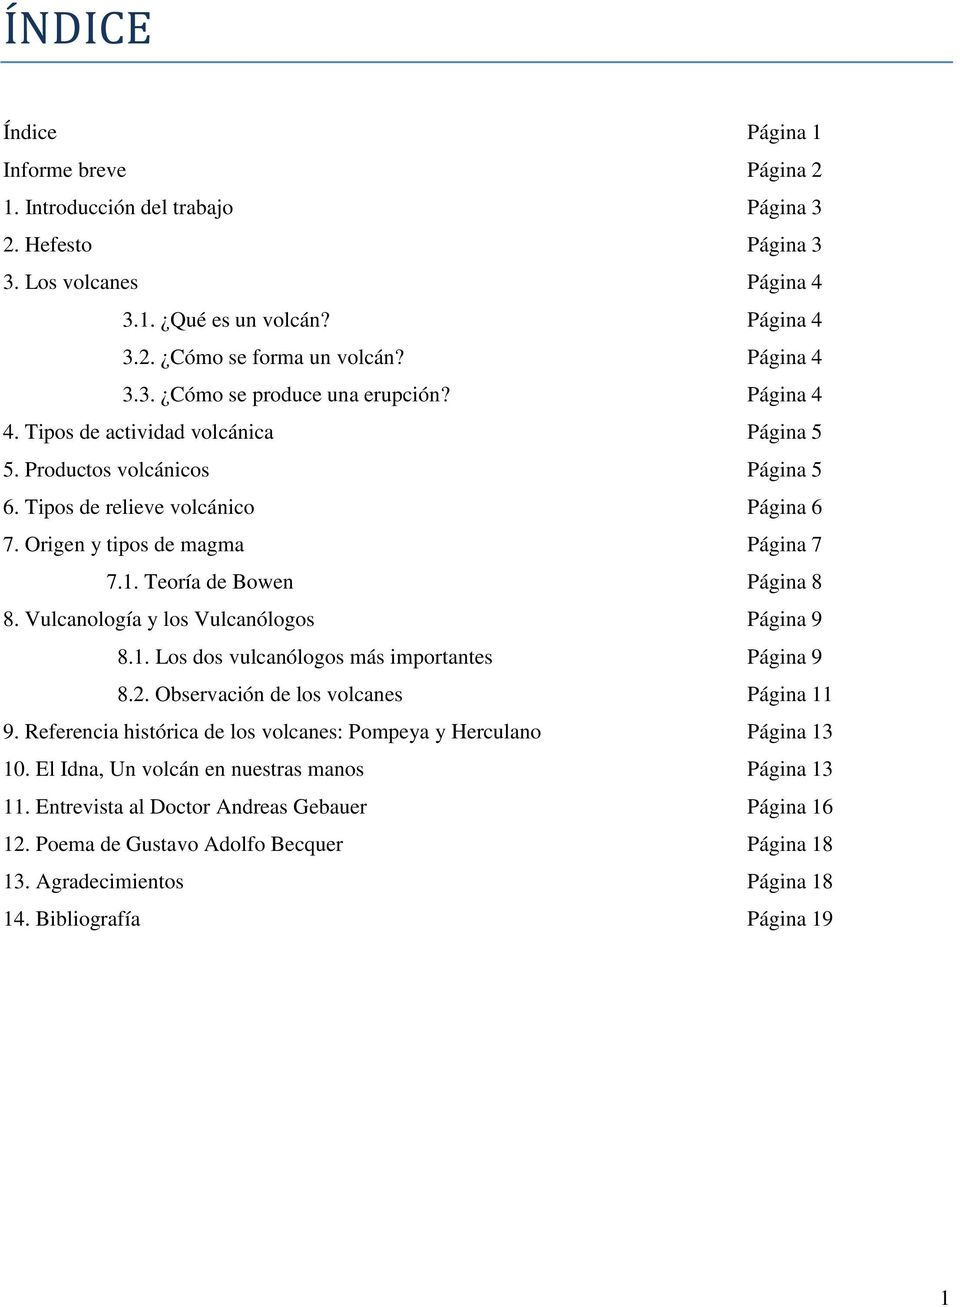 Origen y tipos de magma Página 7 7.1. Teoría de Bowen Página 8 8. Vulcanología y los Vulcanólogos Página 9 8.1. Los dos vulcanólogos más importantes Página 9 8.2.